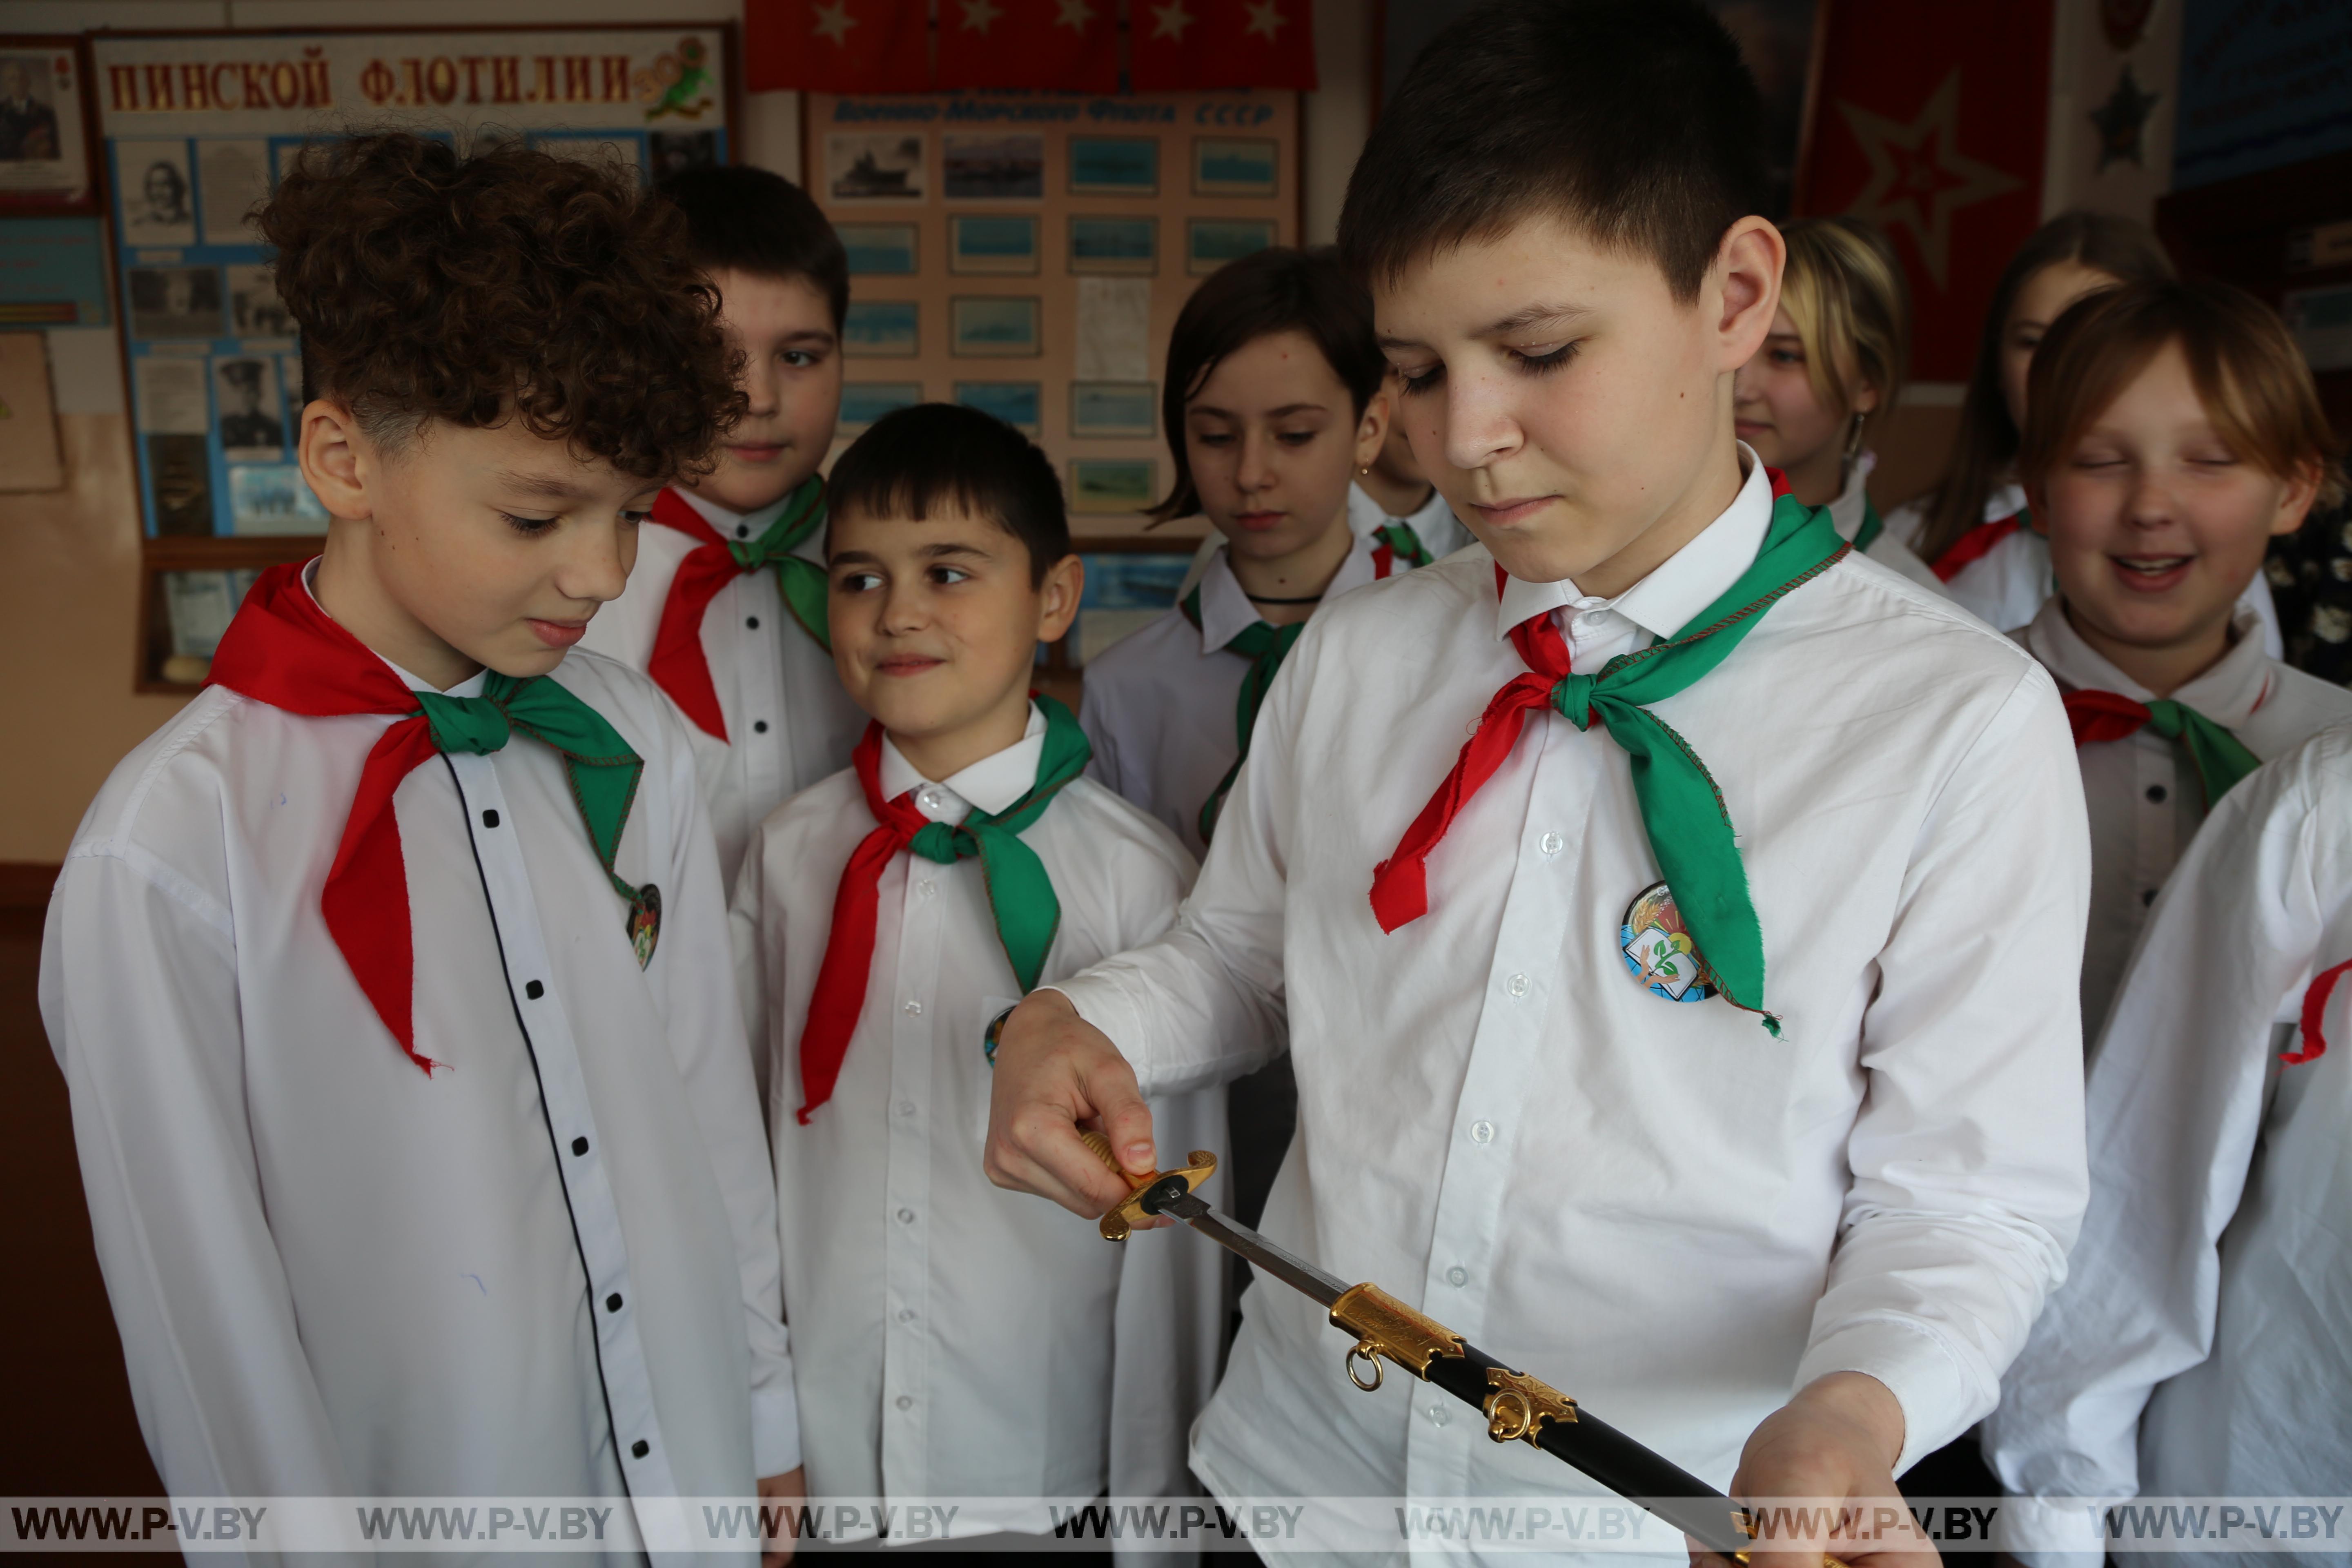 Выставка макетов кораблей разместилась в средней школе №1 г.Пинска